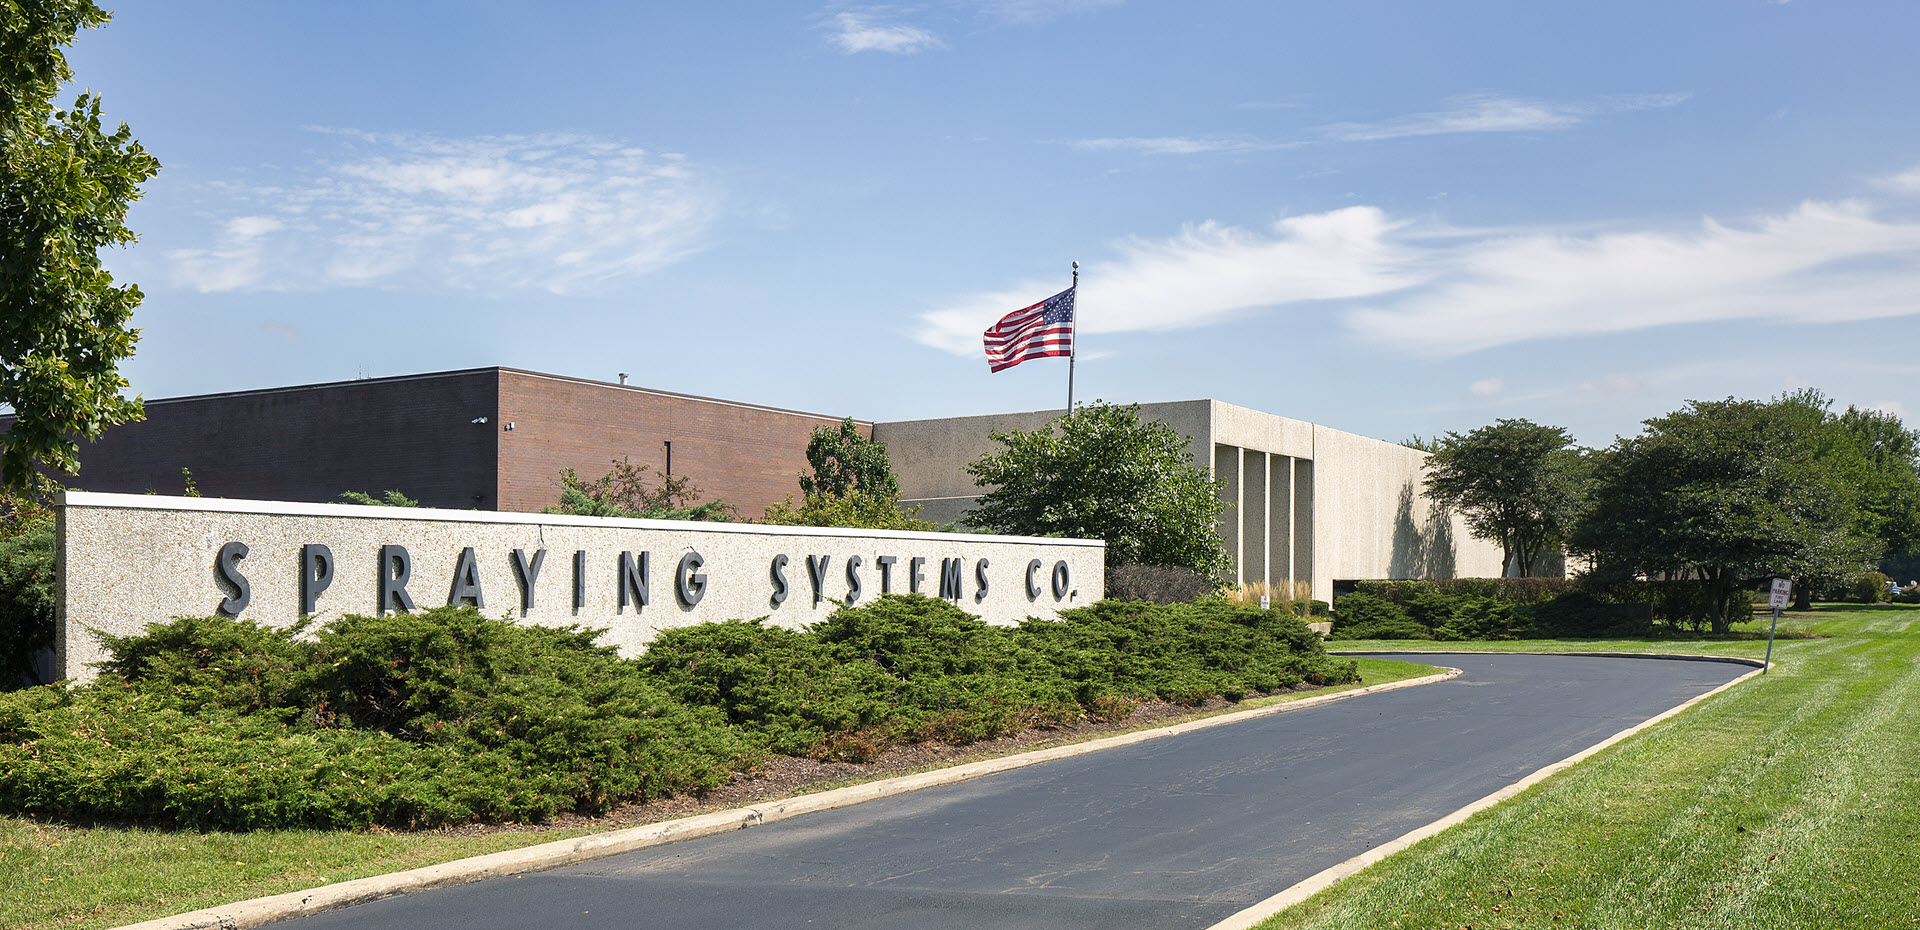 Immeuble de bureaux de Spraying Systems Co. à Wheaton, IL